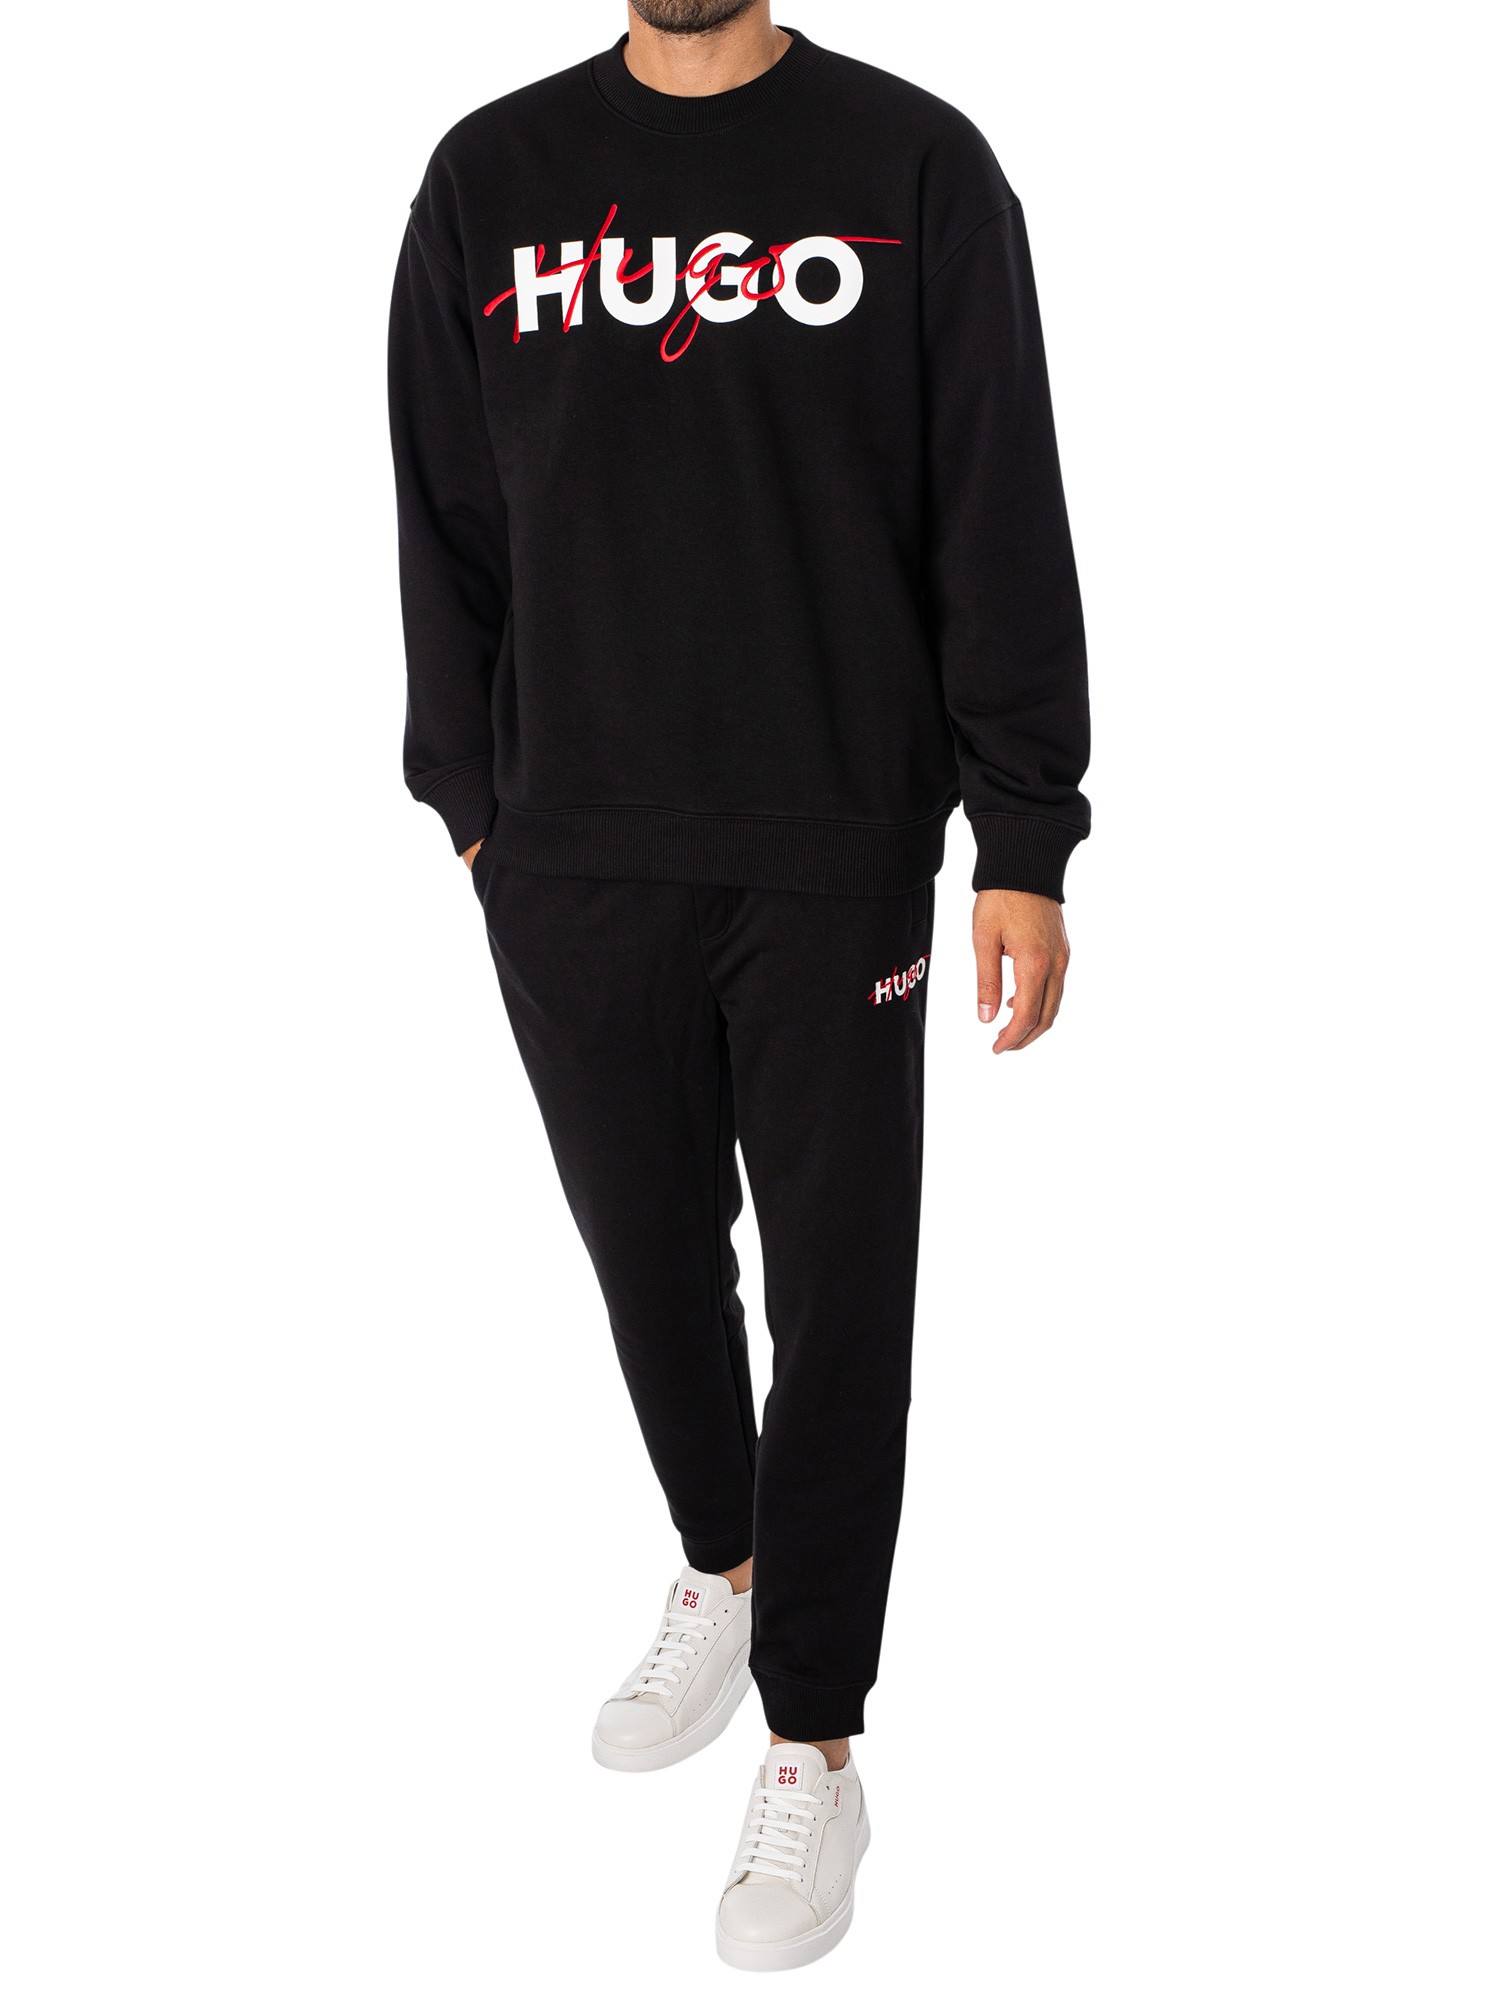 HUGO Droyko Sweatshirt - Black | Standout